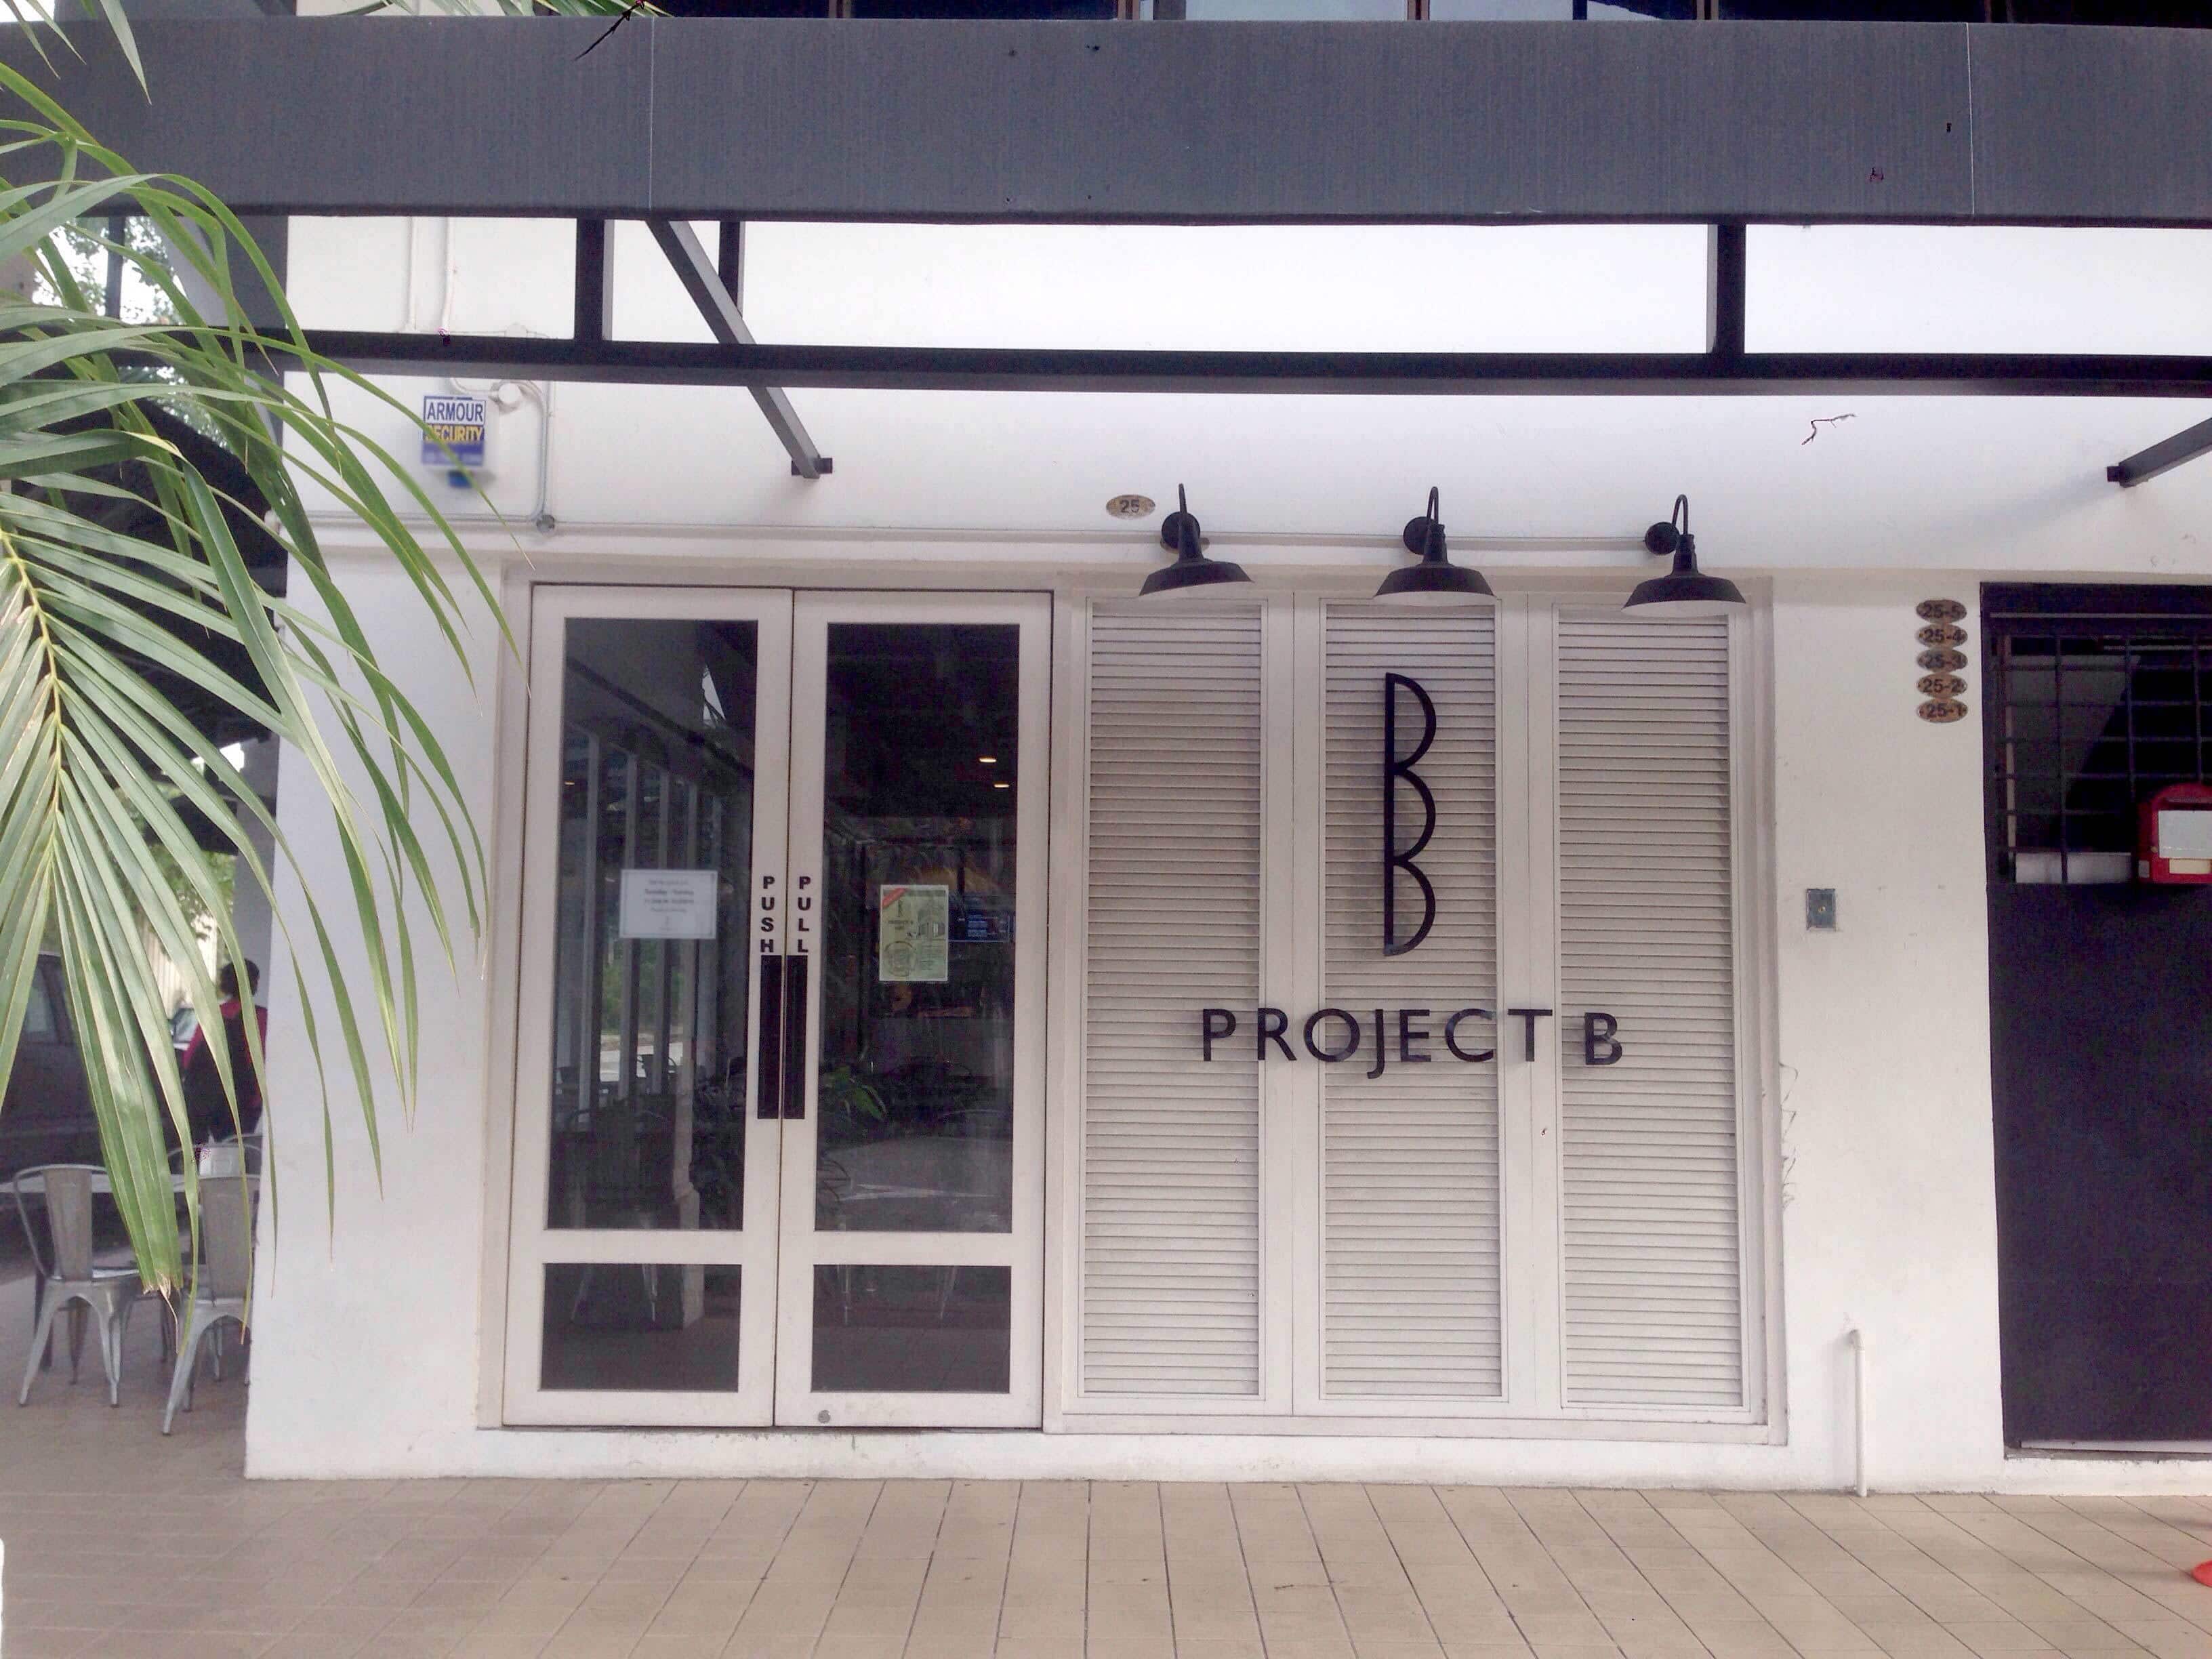 Project B Menu Menu For Project B Sentul Kuala Lumpur